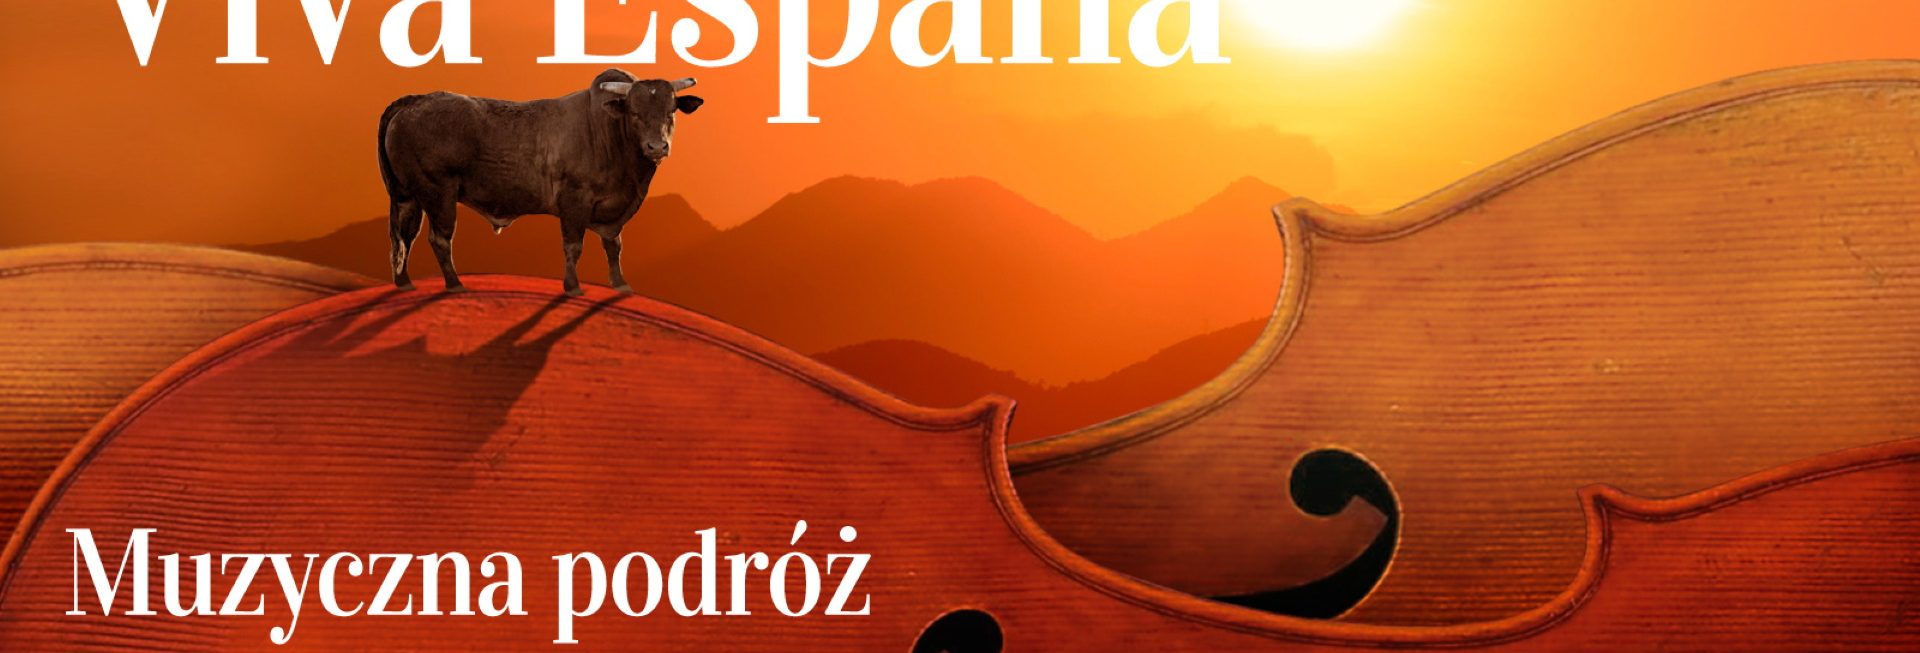 Plakat zapraszający do Olsztyna na Viva España – muzyczną podróż po Hiszpanii w Warmińsko-Mazurskiej Filharmonii w Olsztynie.